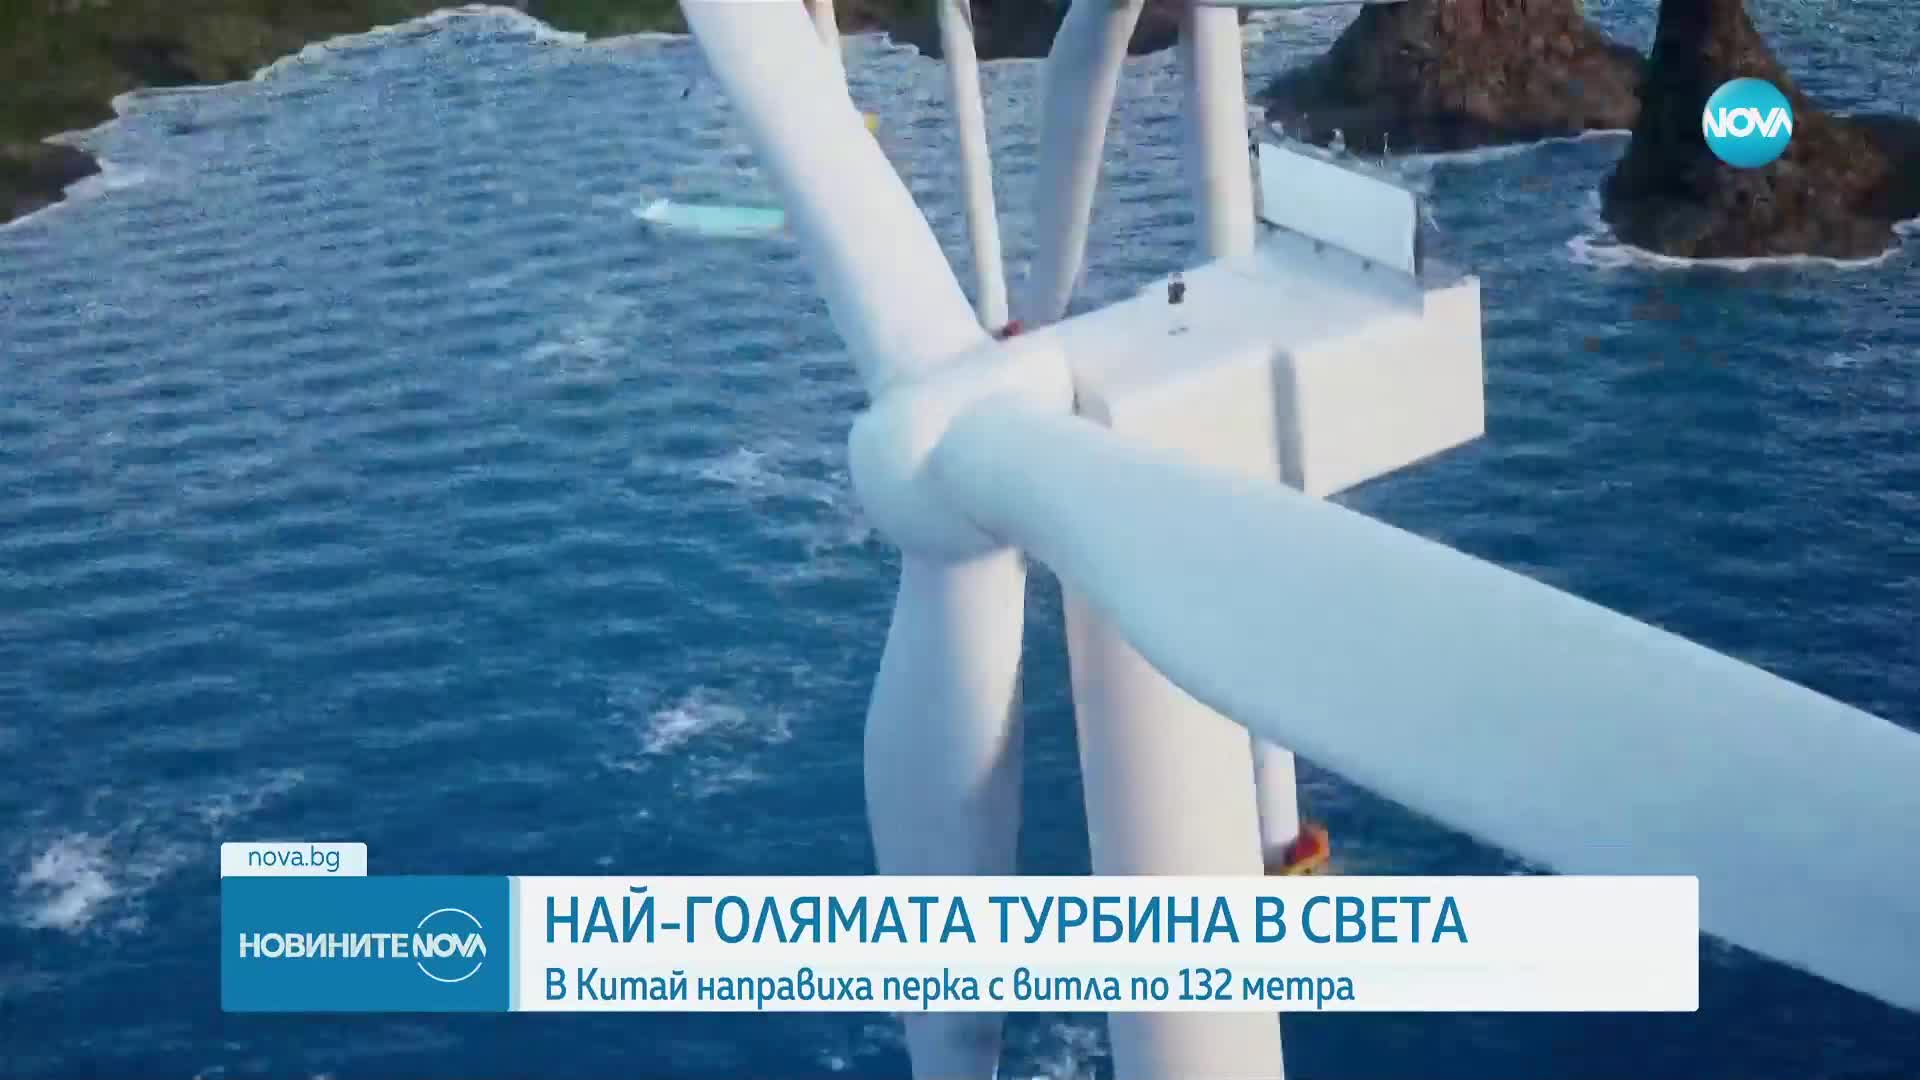 Пуснаха в употреба най-голямата вятърна турбина в света